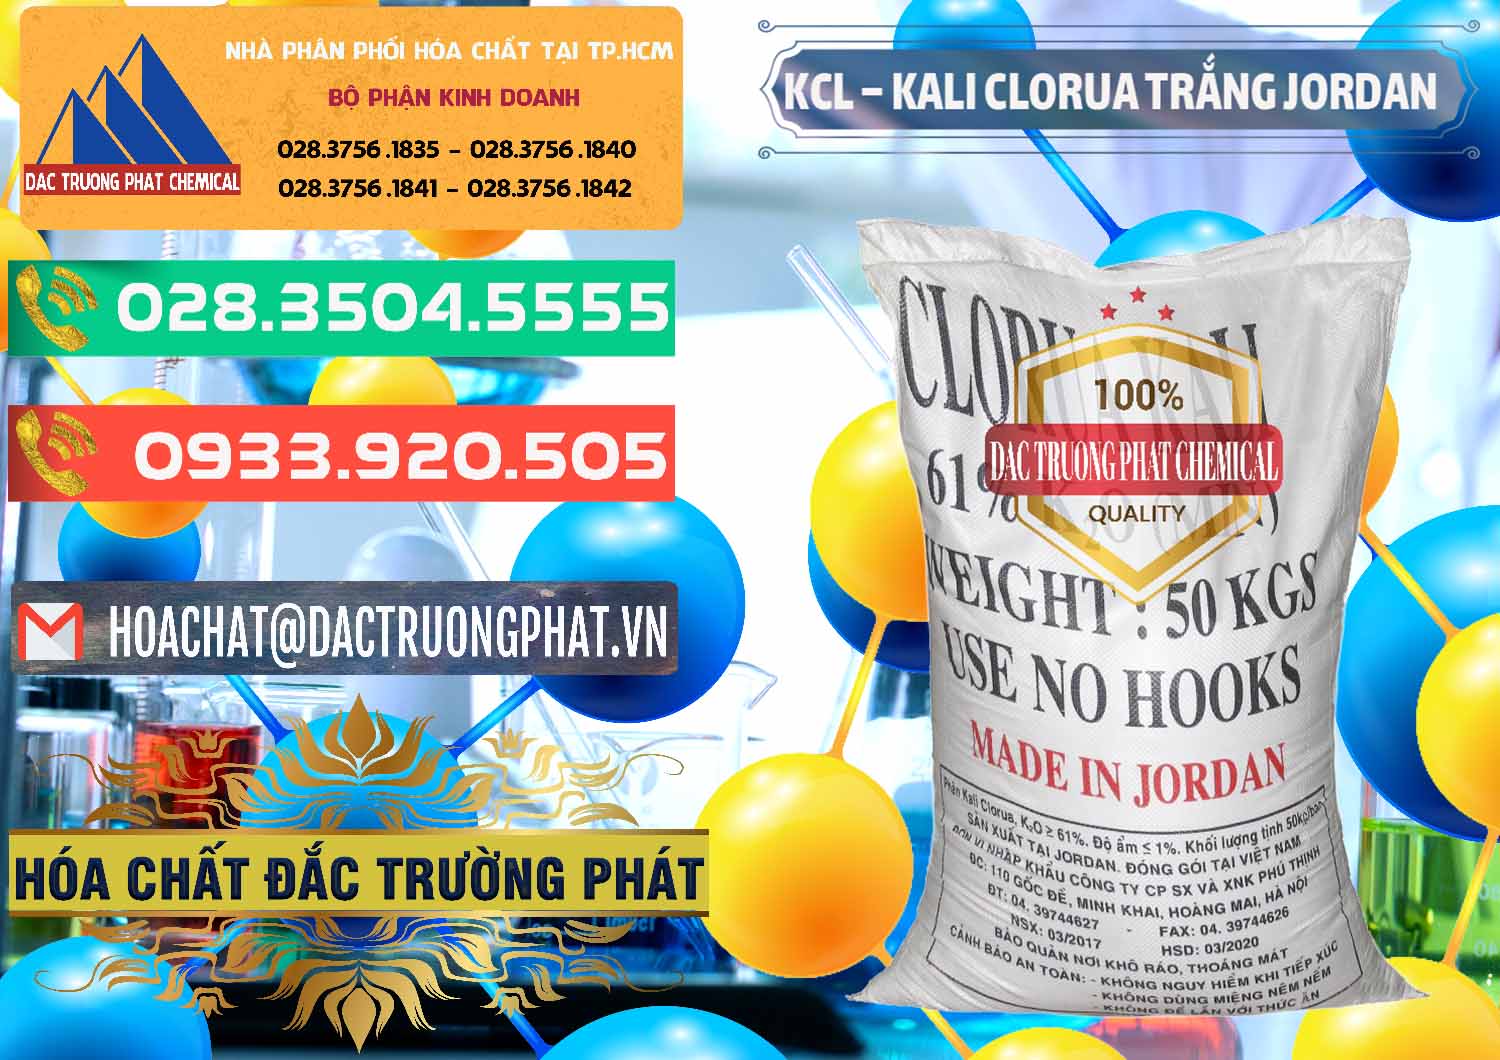 Nơi chuyên bán ( phân phối ) KCL – Kali Clorua Trắng Jordan - 0088 - Chuyên kinh doanh và cung cấp hóa chất tại TP.HCM - congtyhoachat.com.vn